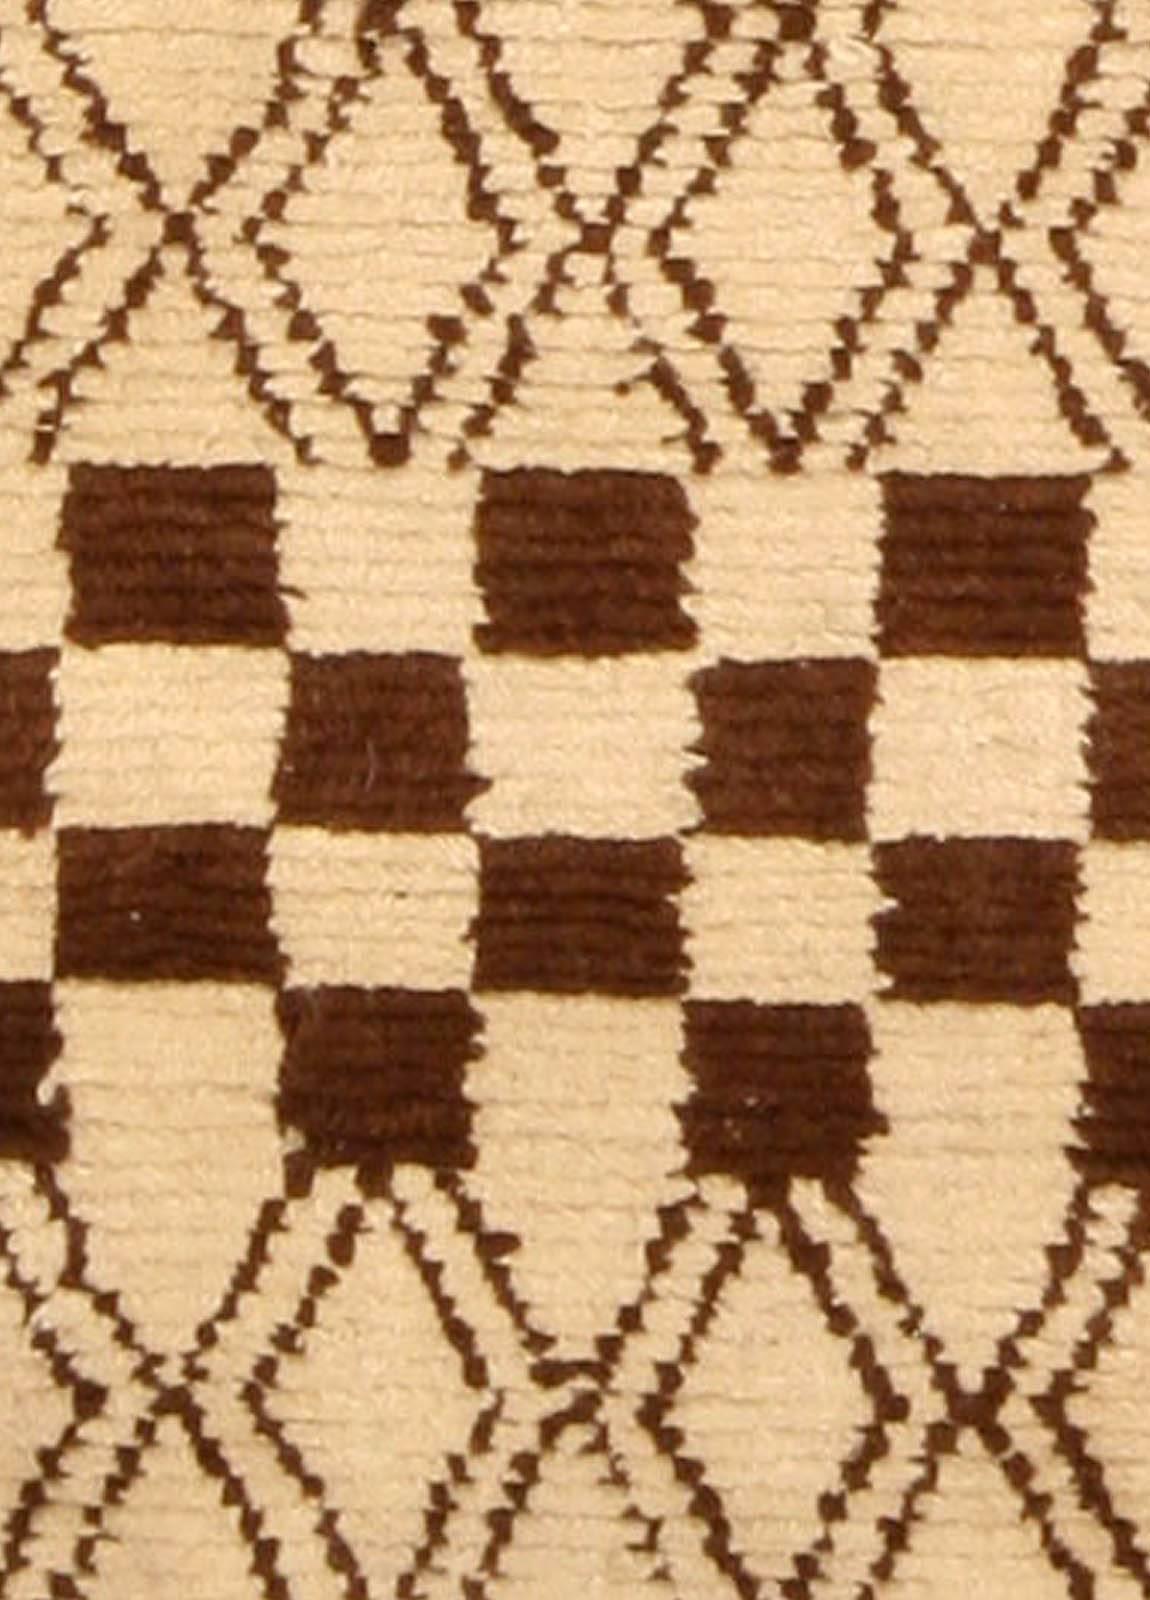 Moderner marokkanischer Teppich aus dem Jahr 1790 in Beige und Braun von Doris Leslie Blau
Größe: 4'0